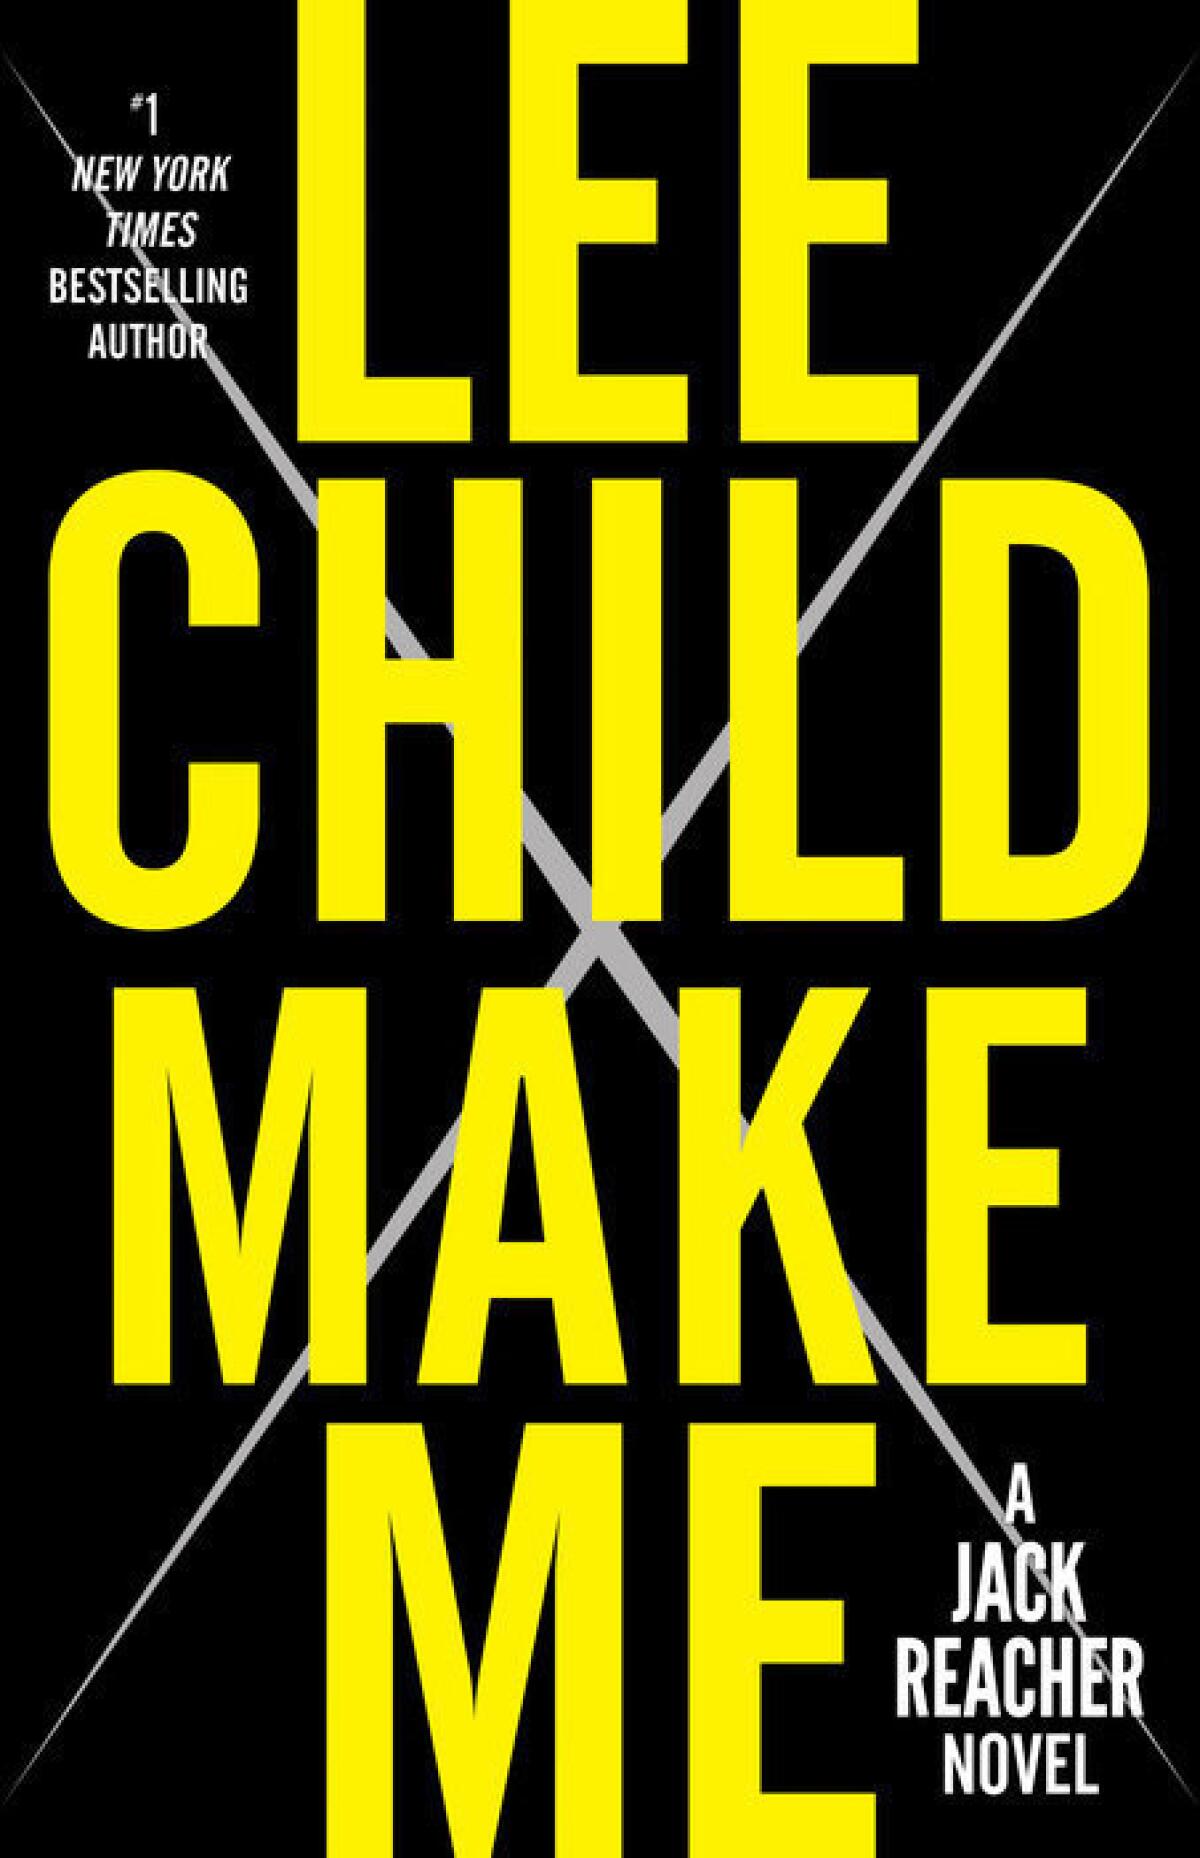 Make Me A Jack Reacher Novel Lee Child